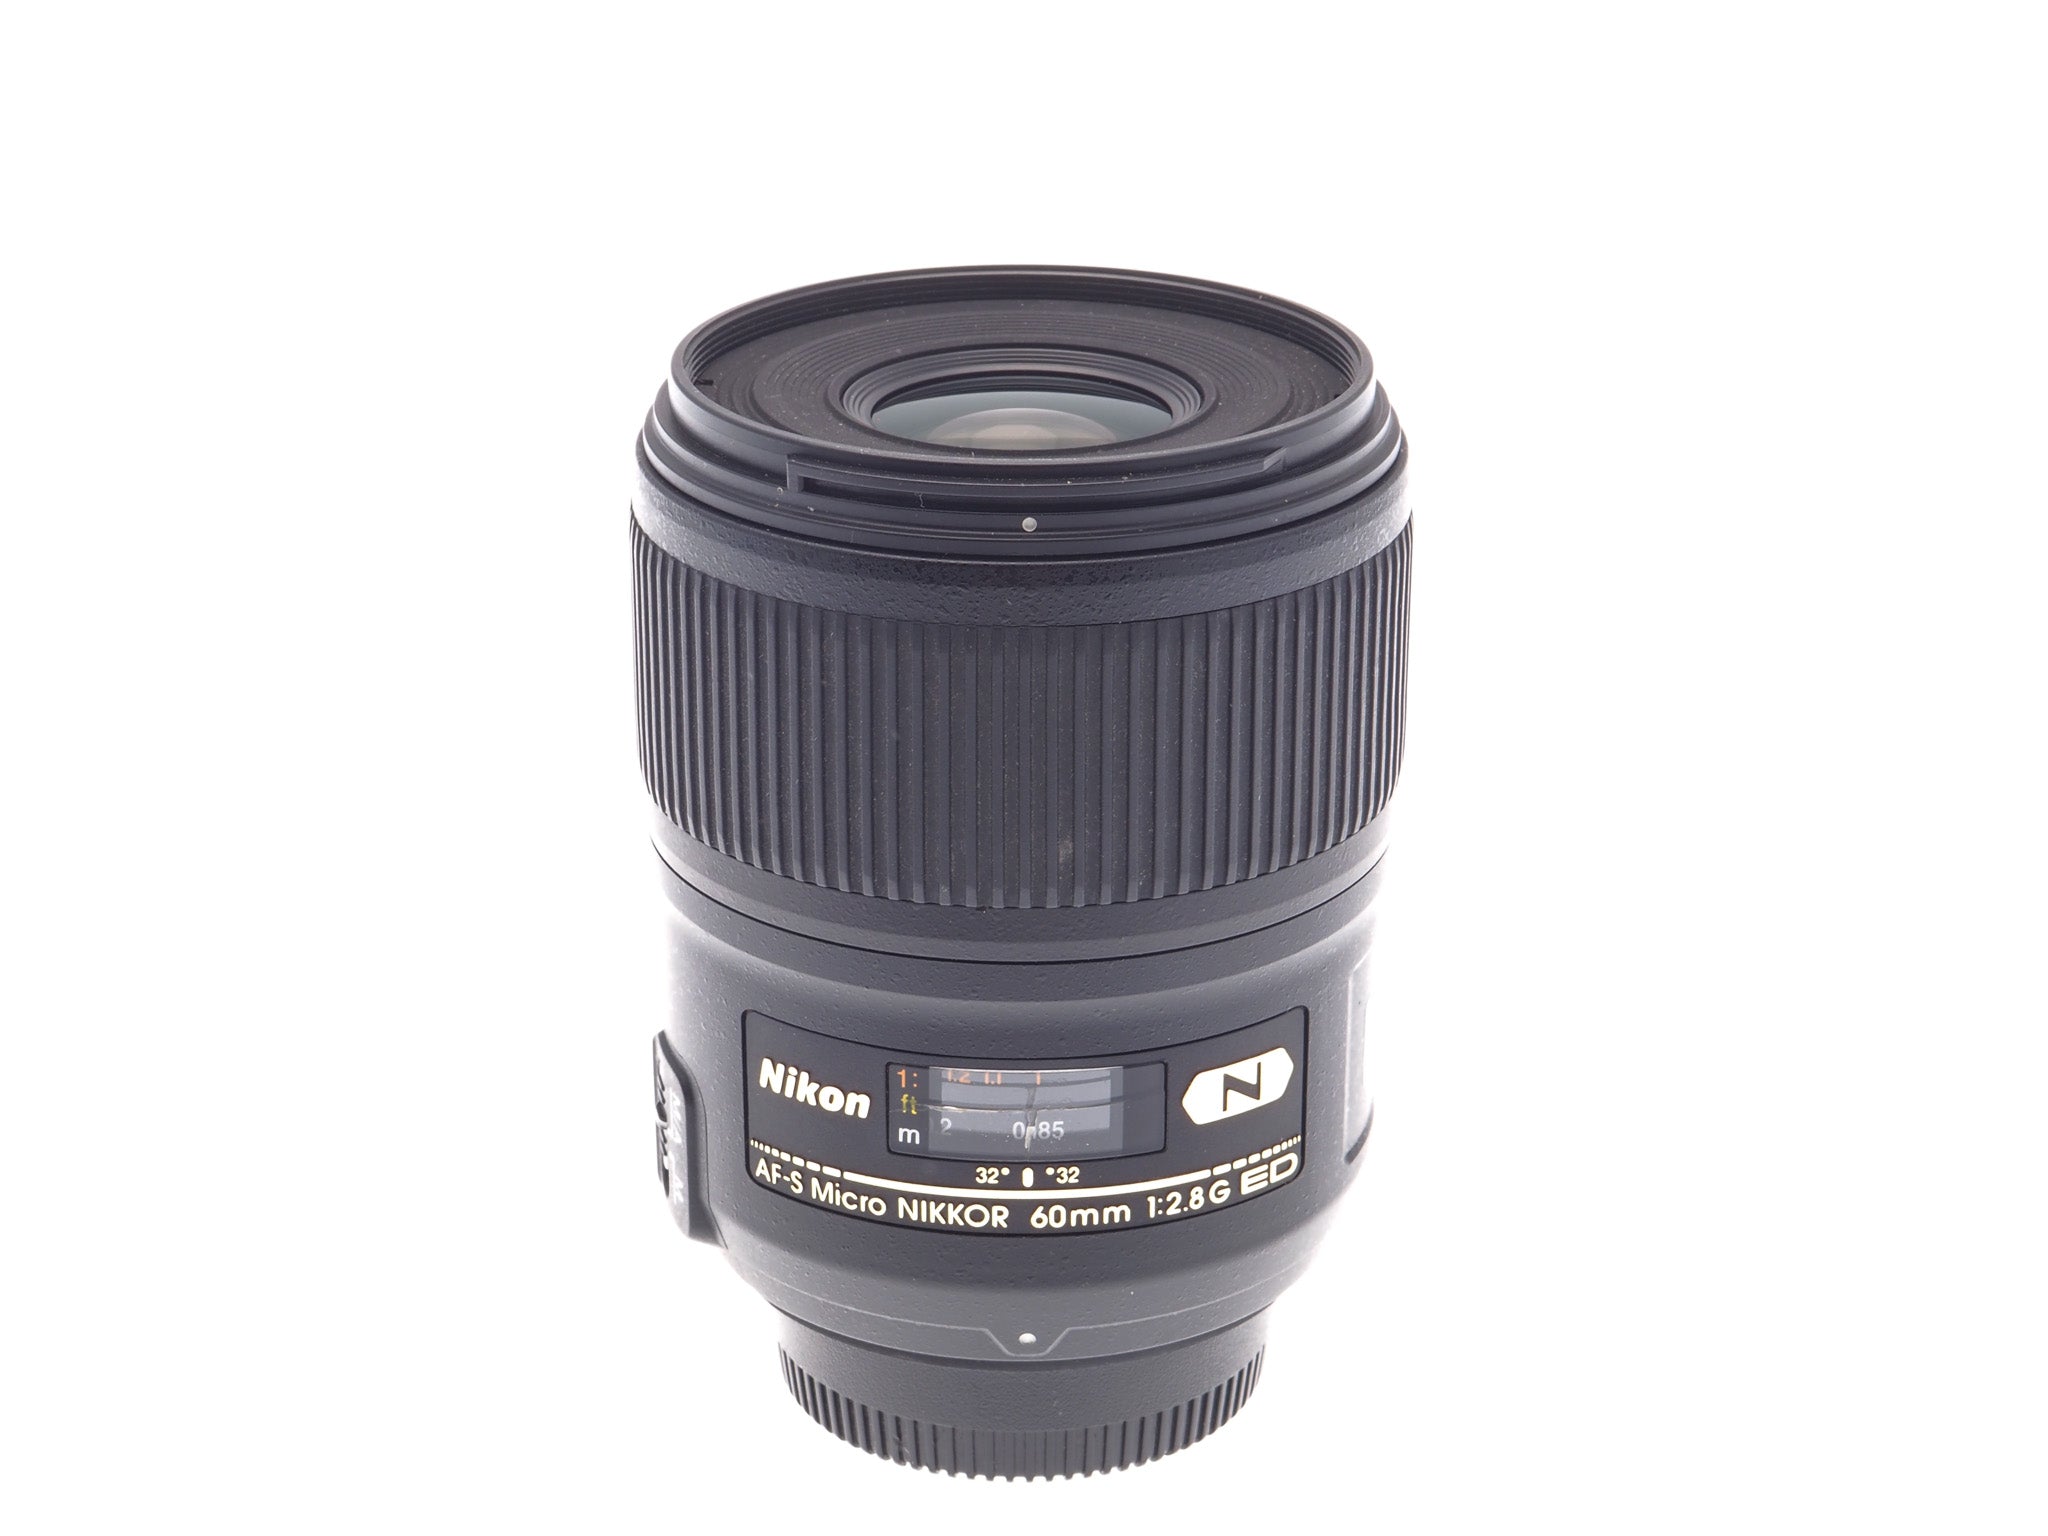 Nikon 60mm f2.8 G ED N AF-S Micro Nikkor - Lens